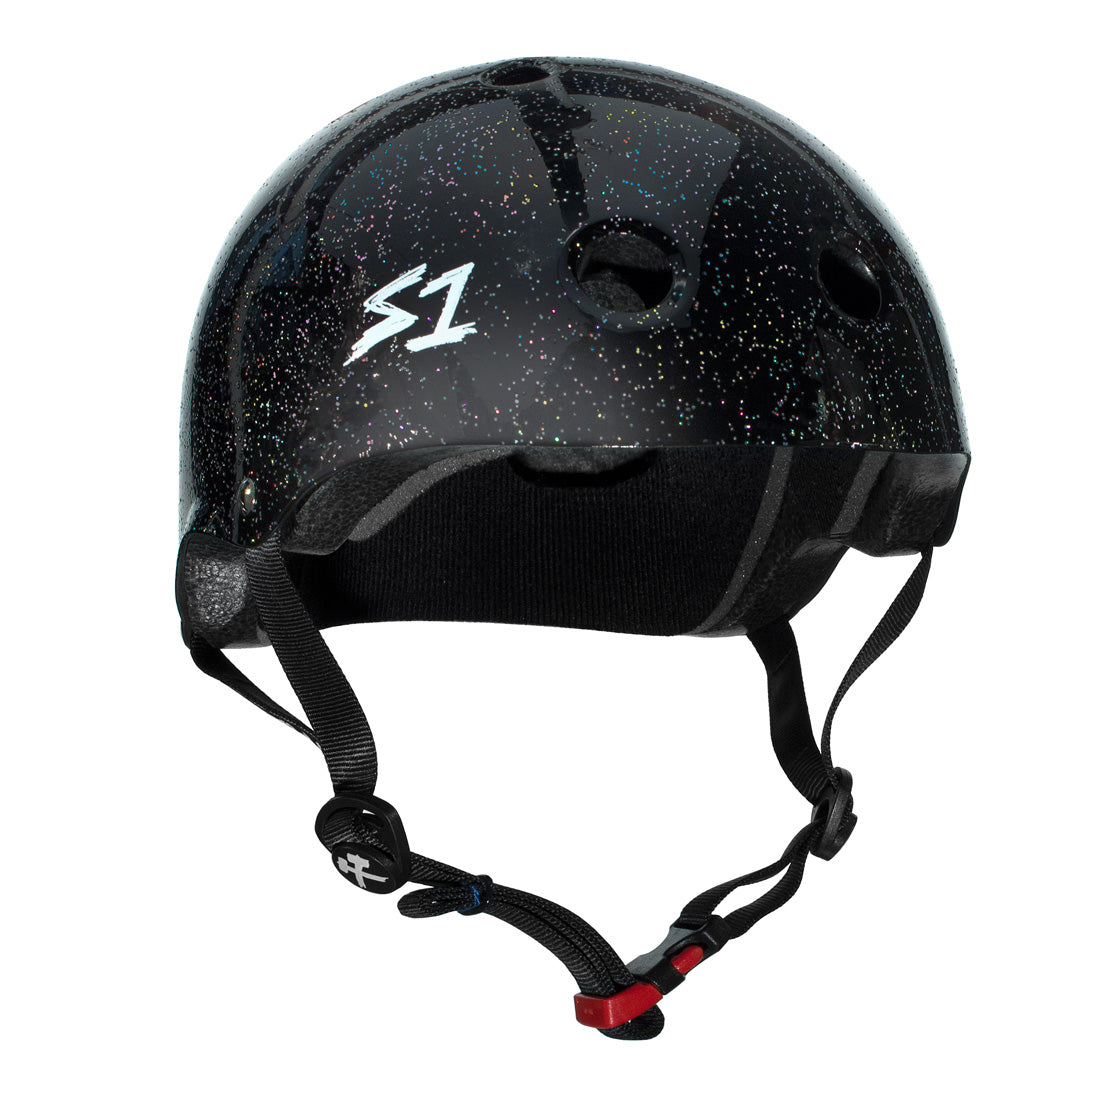 S-One Mini Lifer Helmet - Black Glitter Helmets